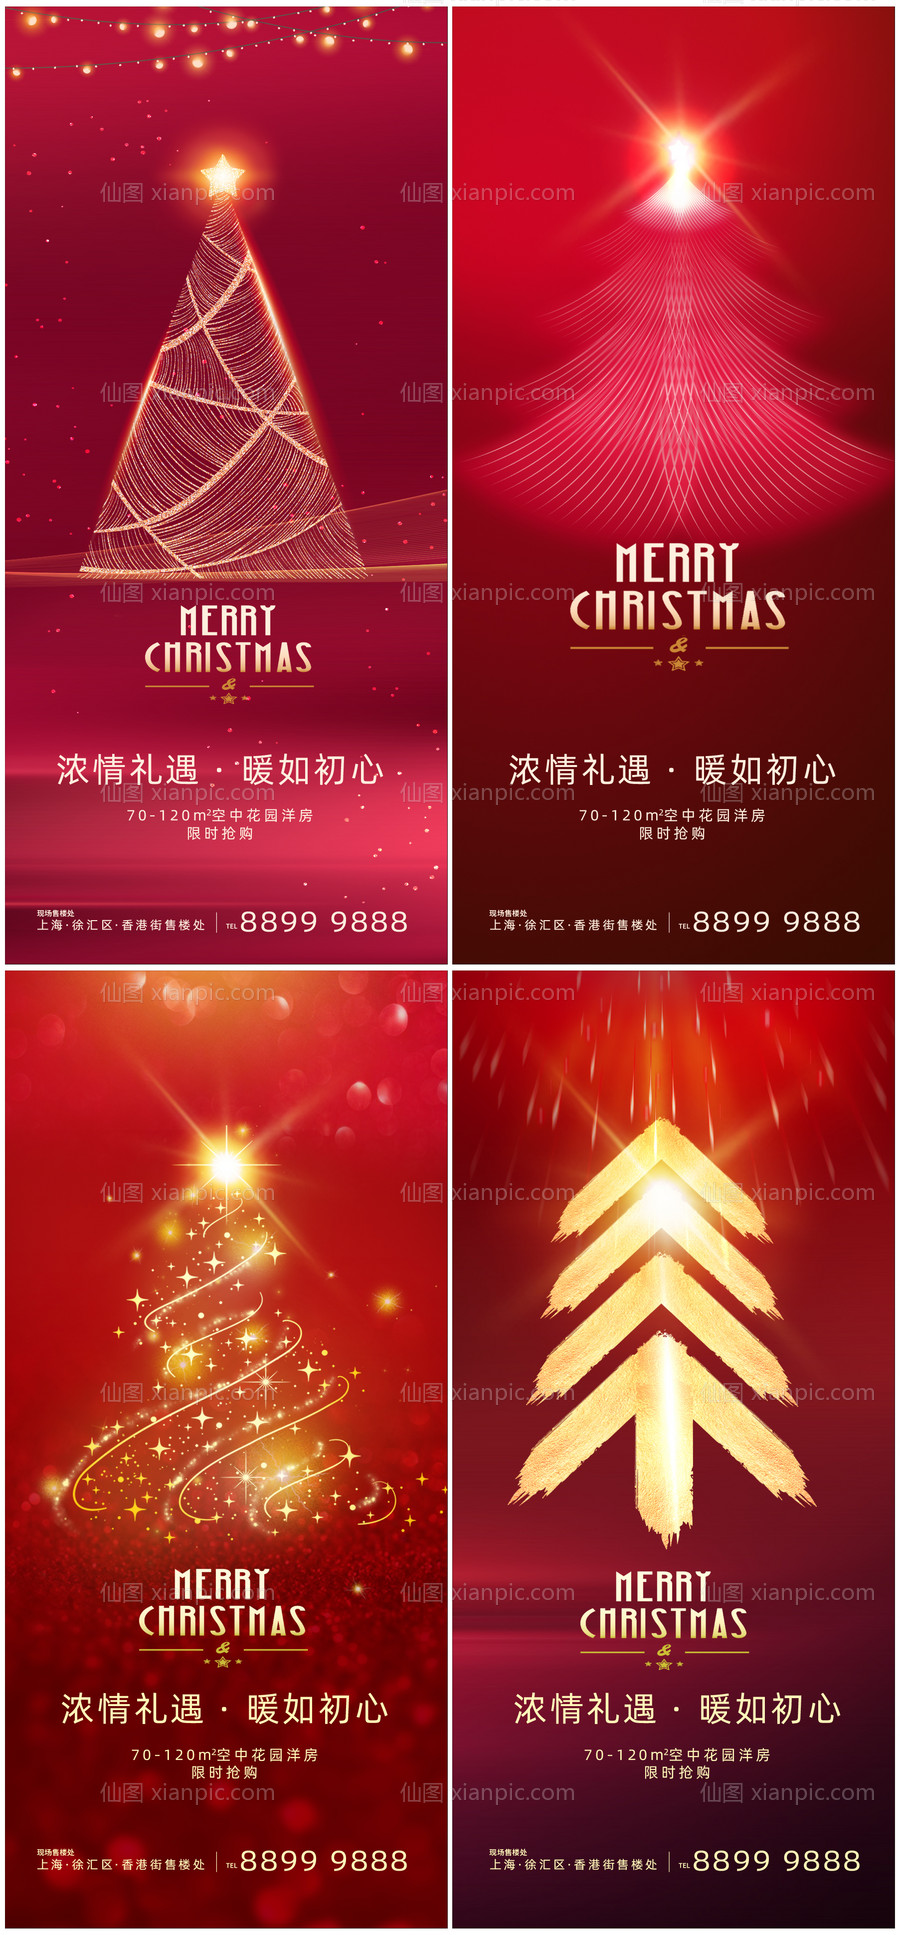 素材乐-圣诞节微信移动端海报